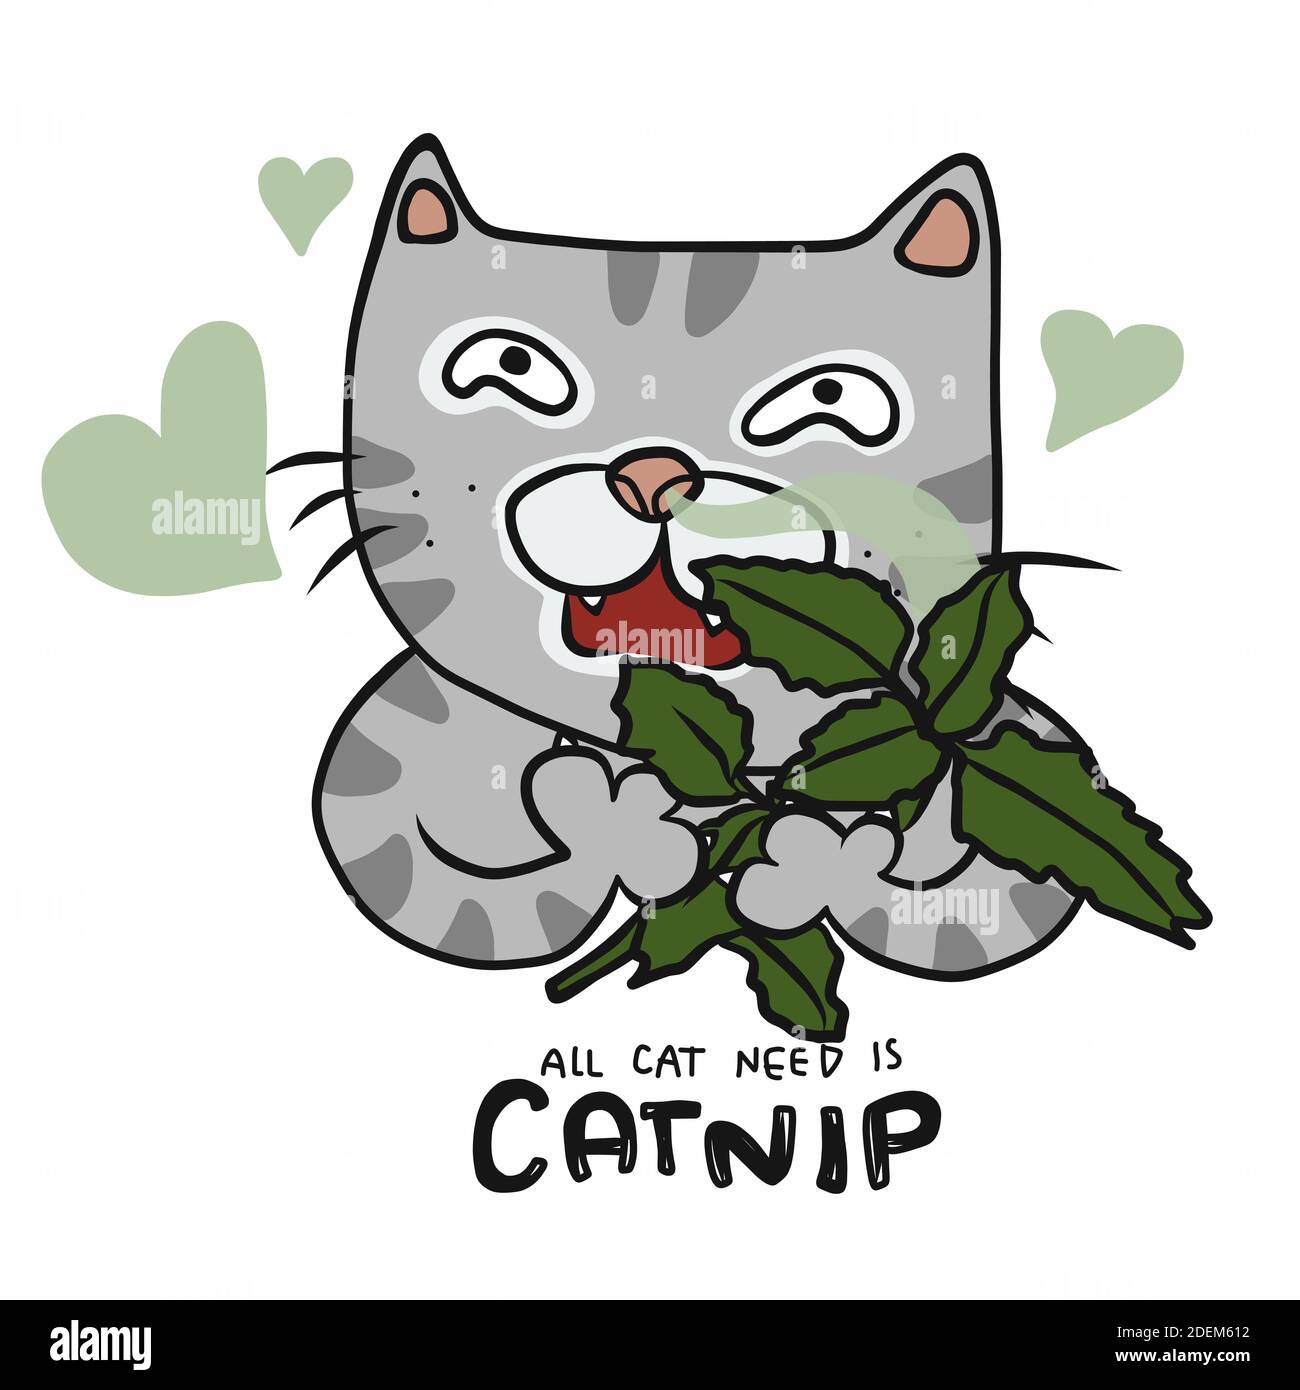 А мы пахнем кошачьей мятой и листвой. Кошачья мята рисунок. Кошка с мятой. Кот нанюхался кошачьей мяты. Кошачья мята нарисовать.